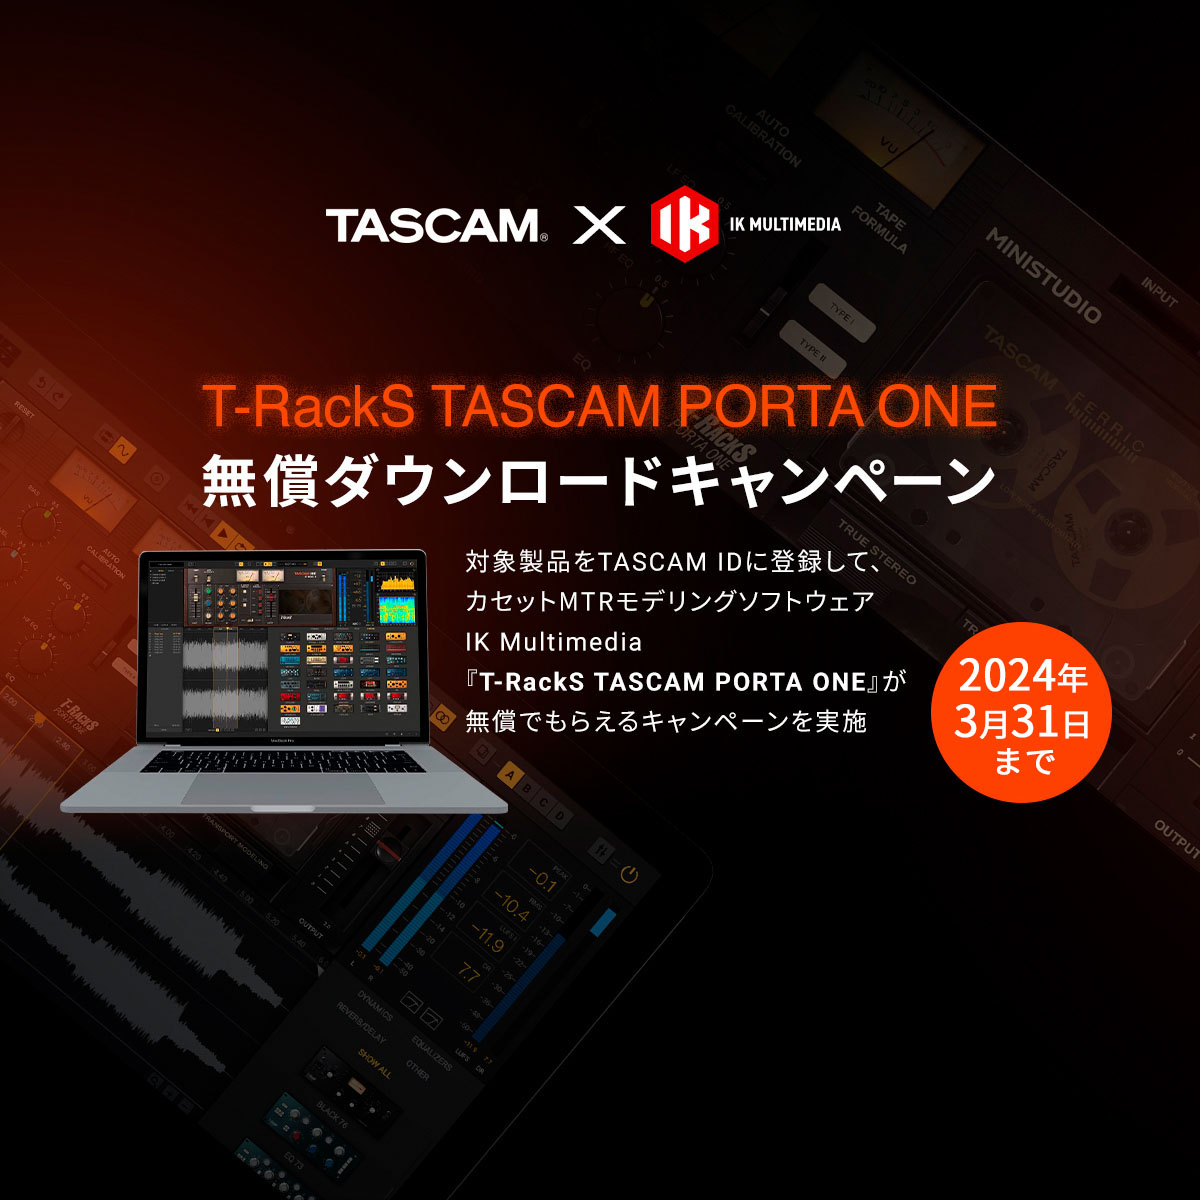 TASCAM Modelシリーズの購入でカセットMTRモデリング ソフトウェア『IK Multimedia TASCAM PORTA ONE』がもらえるキャンペーンを実施。